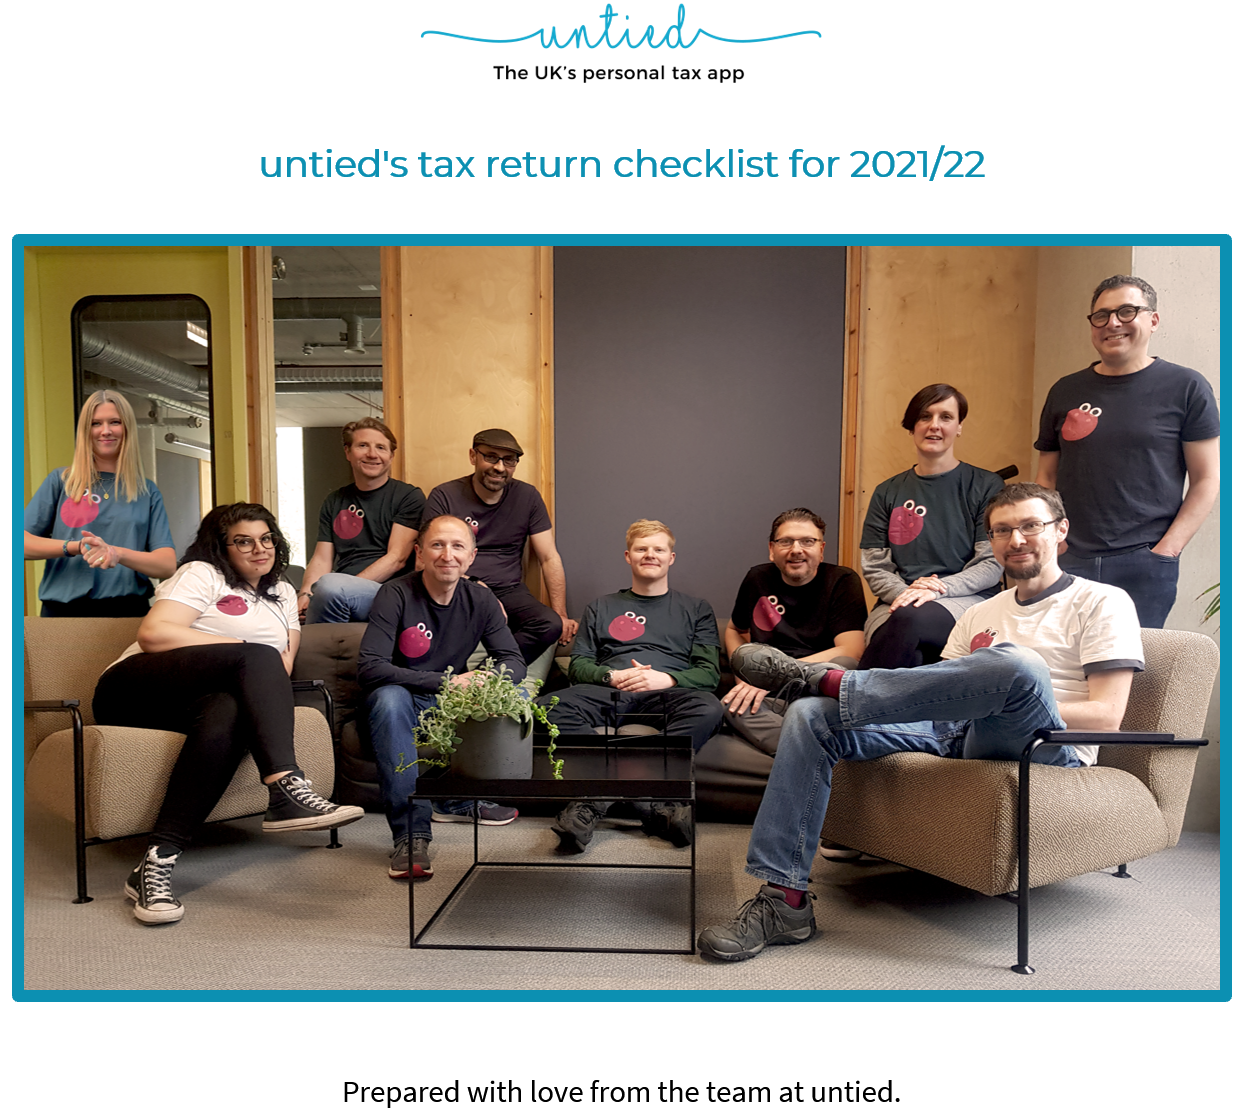 Tax checklist team photo 2021-22